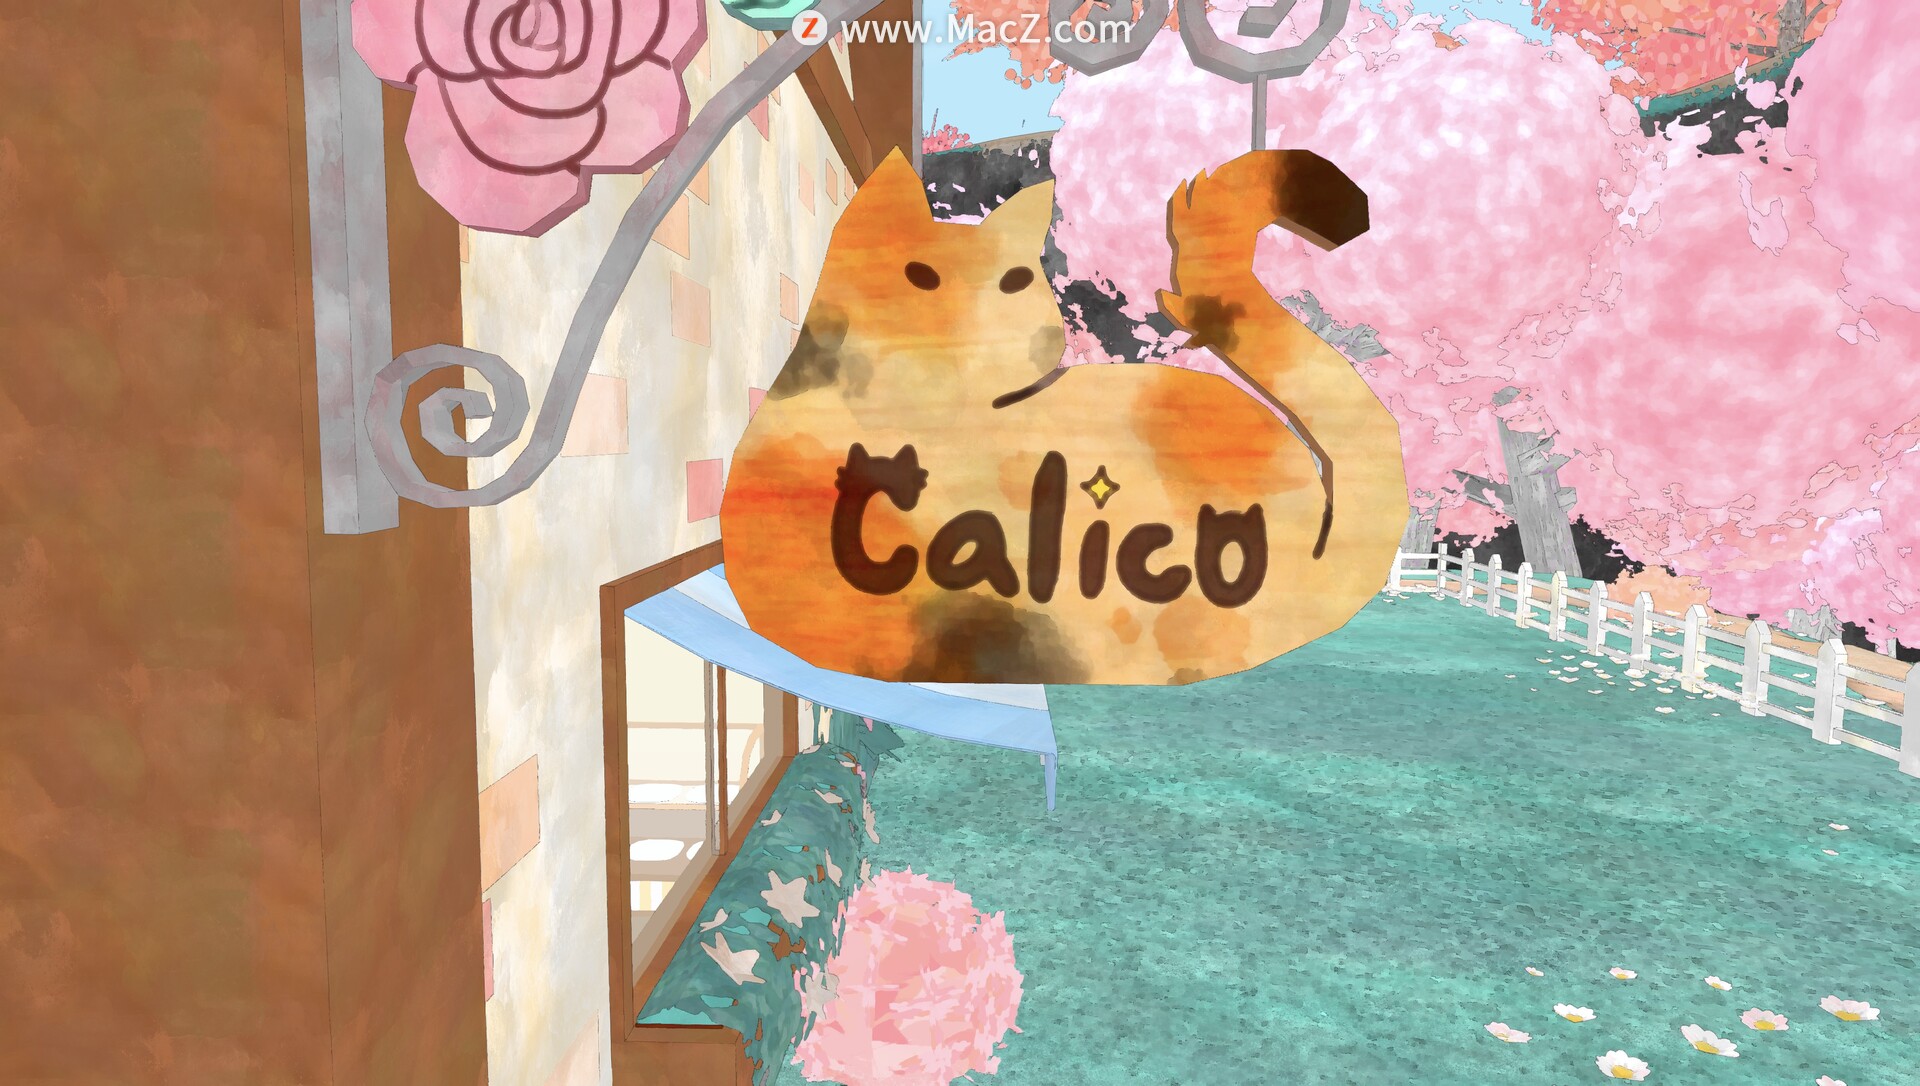 Calico for Mac(撸猫模拟器游戏)